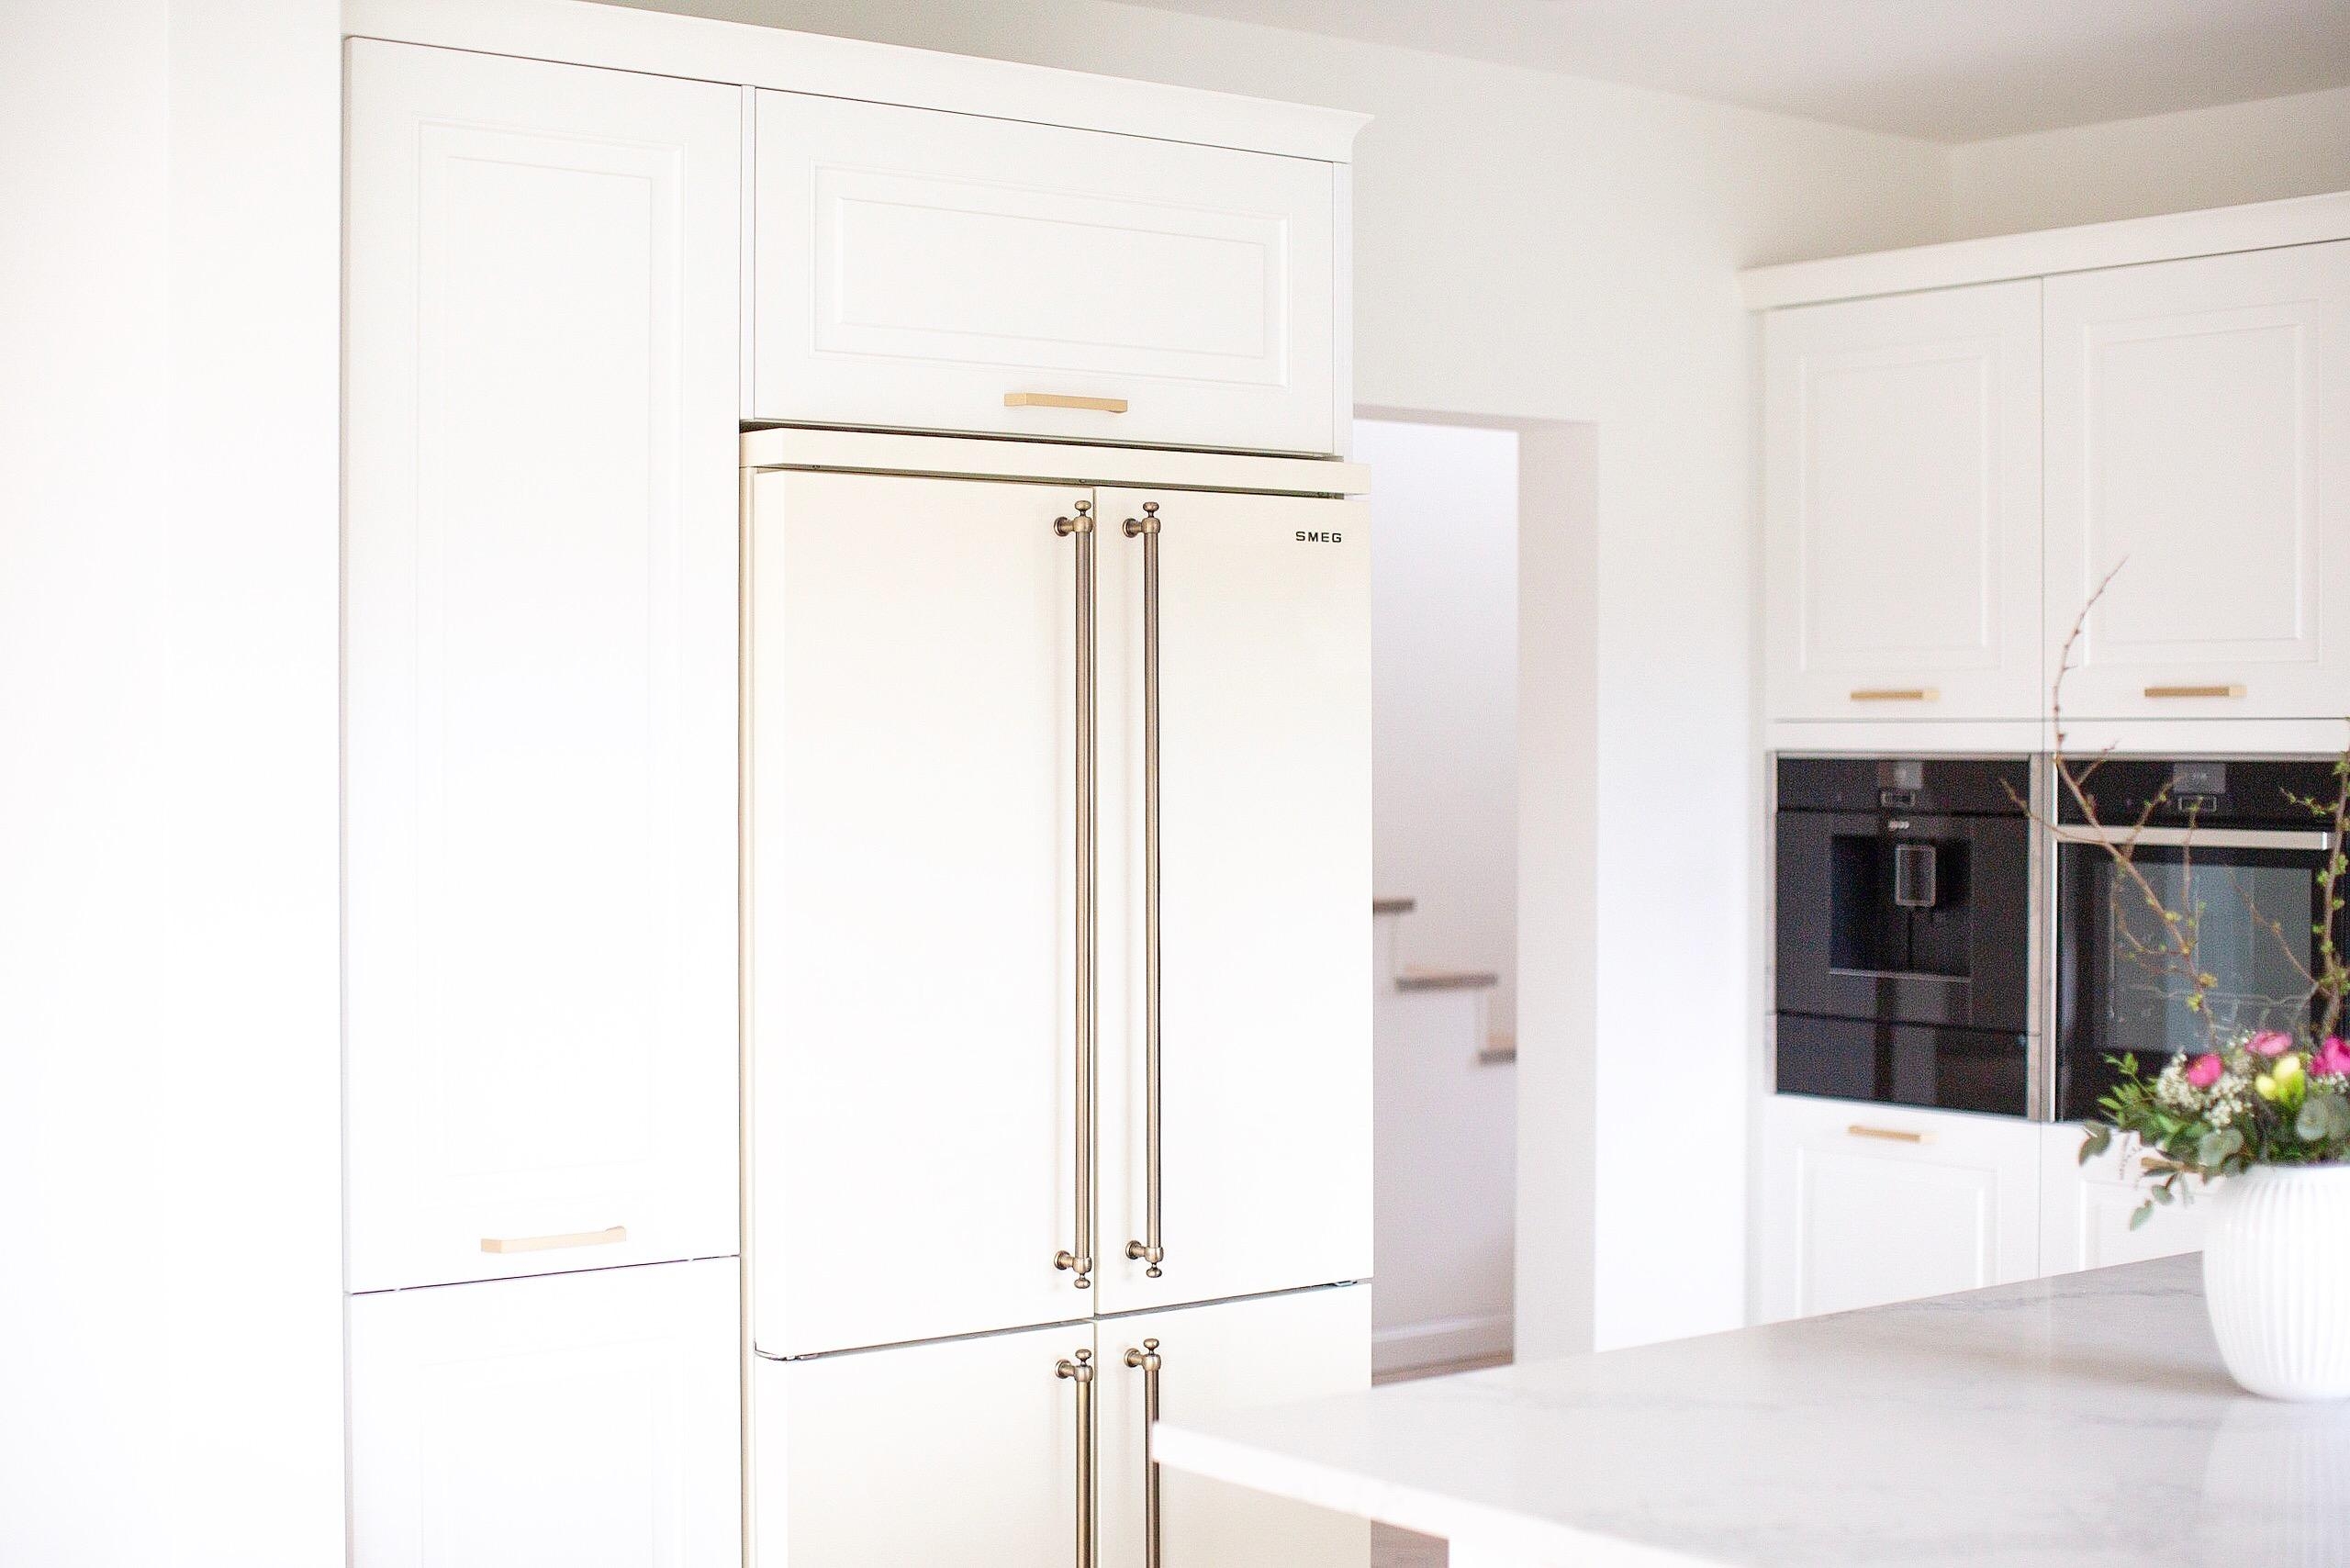 Küche
#whitehome #Küche #minimalism #smeglove